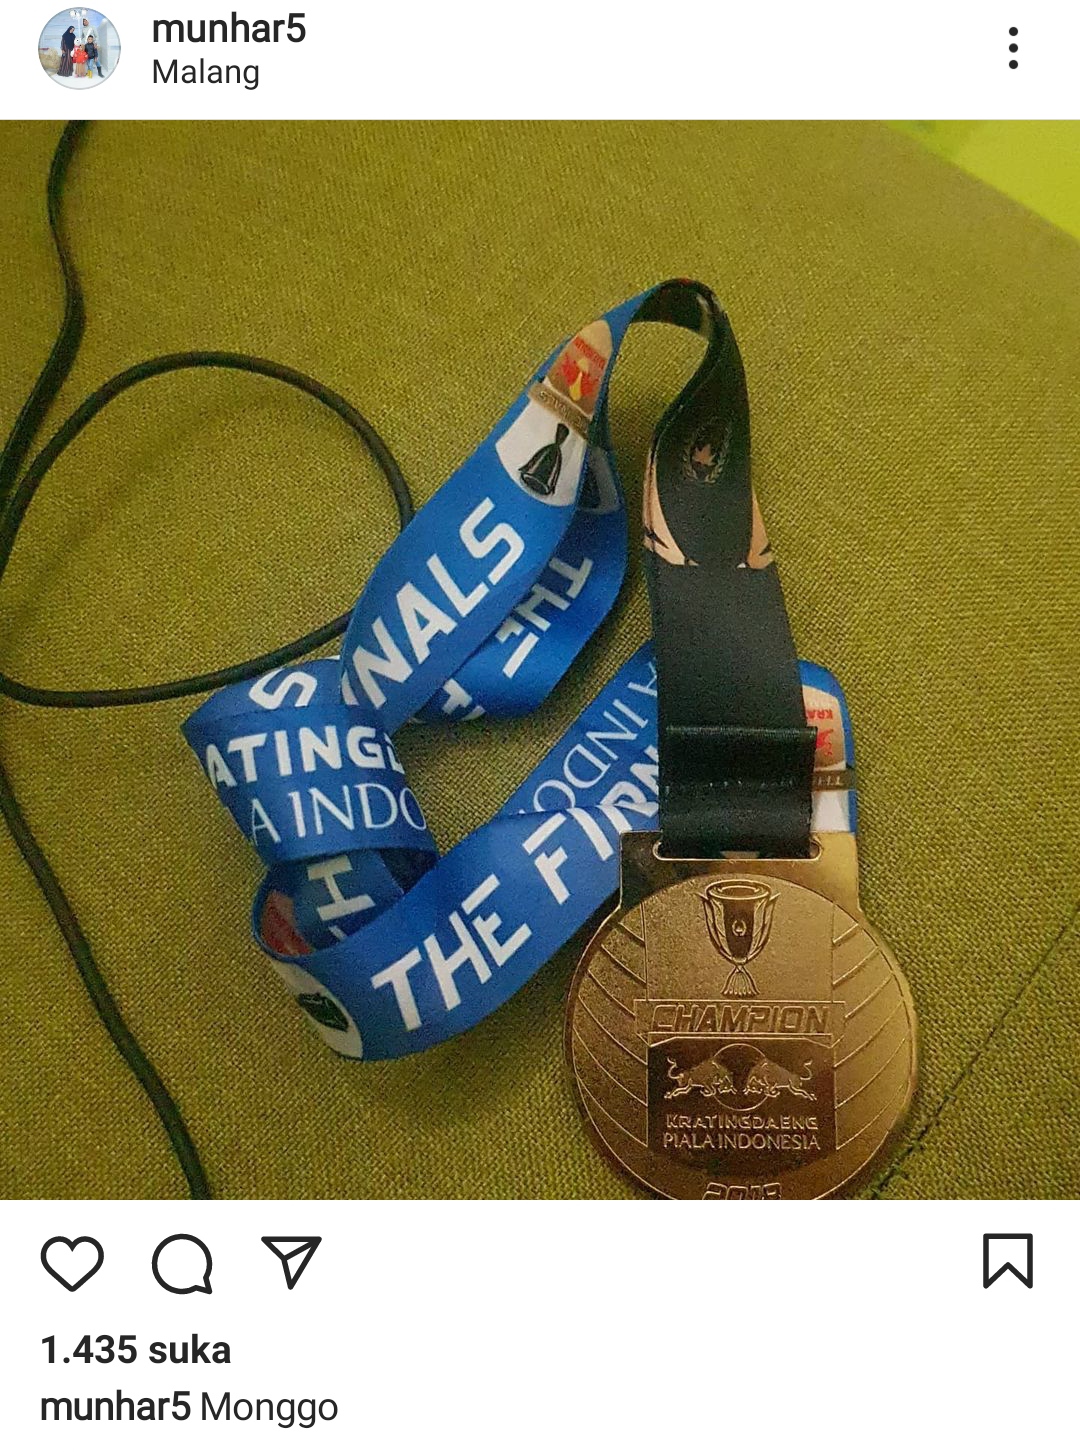 Di akun instagramnya, Munhar melelang medali juara Piala Indonesia saat membela PSM Makassar pada 2019 (Foto/ Istimewa)